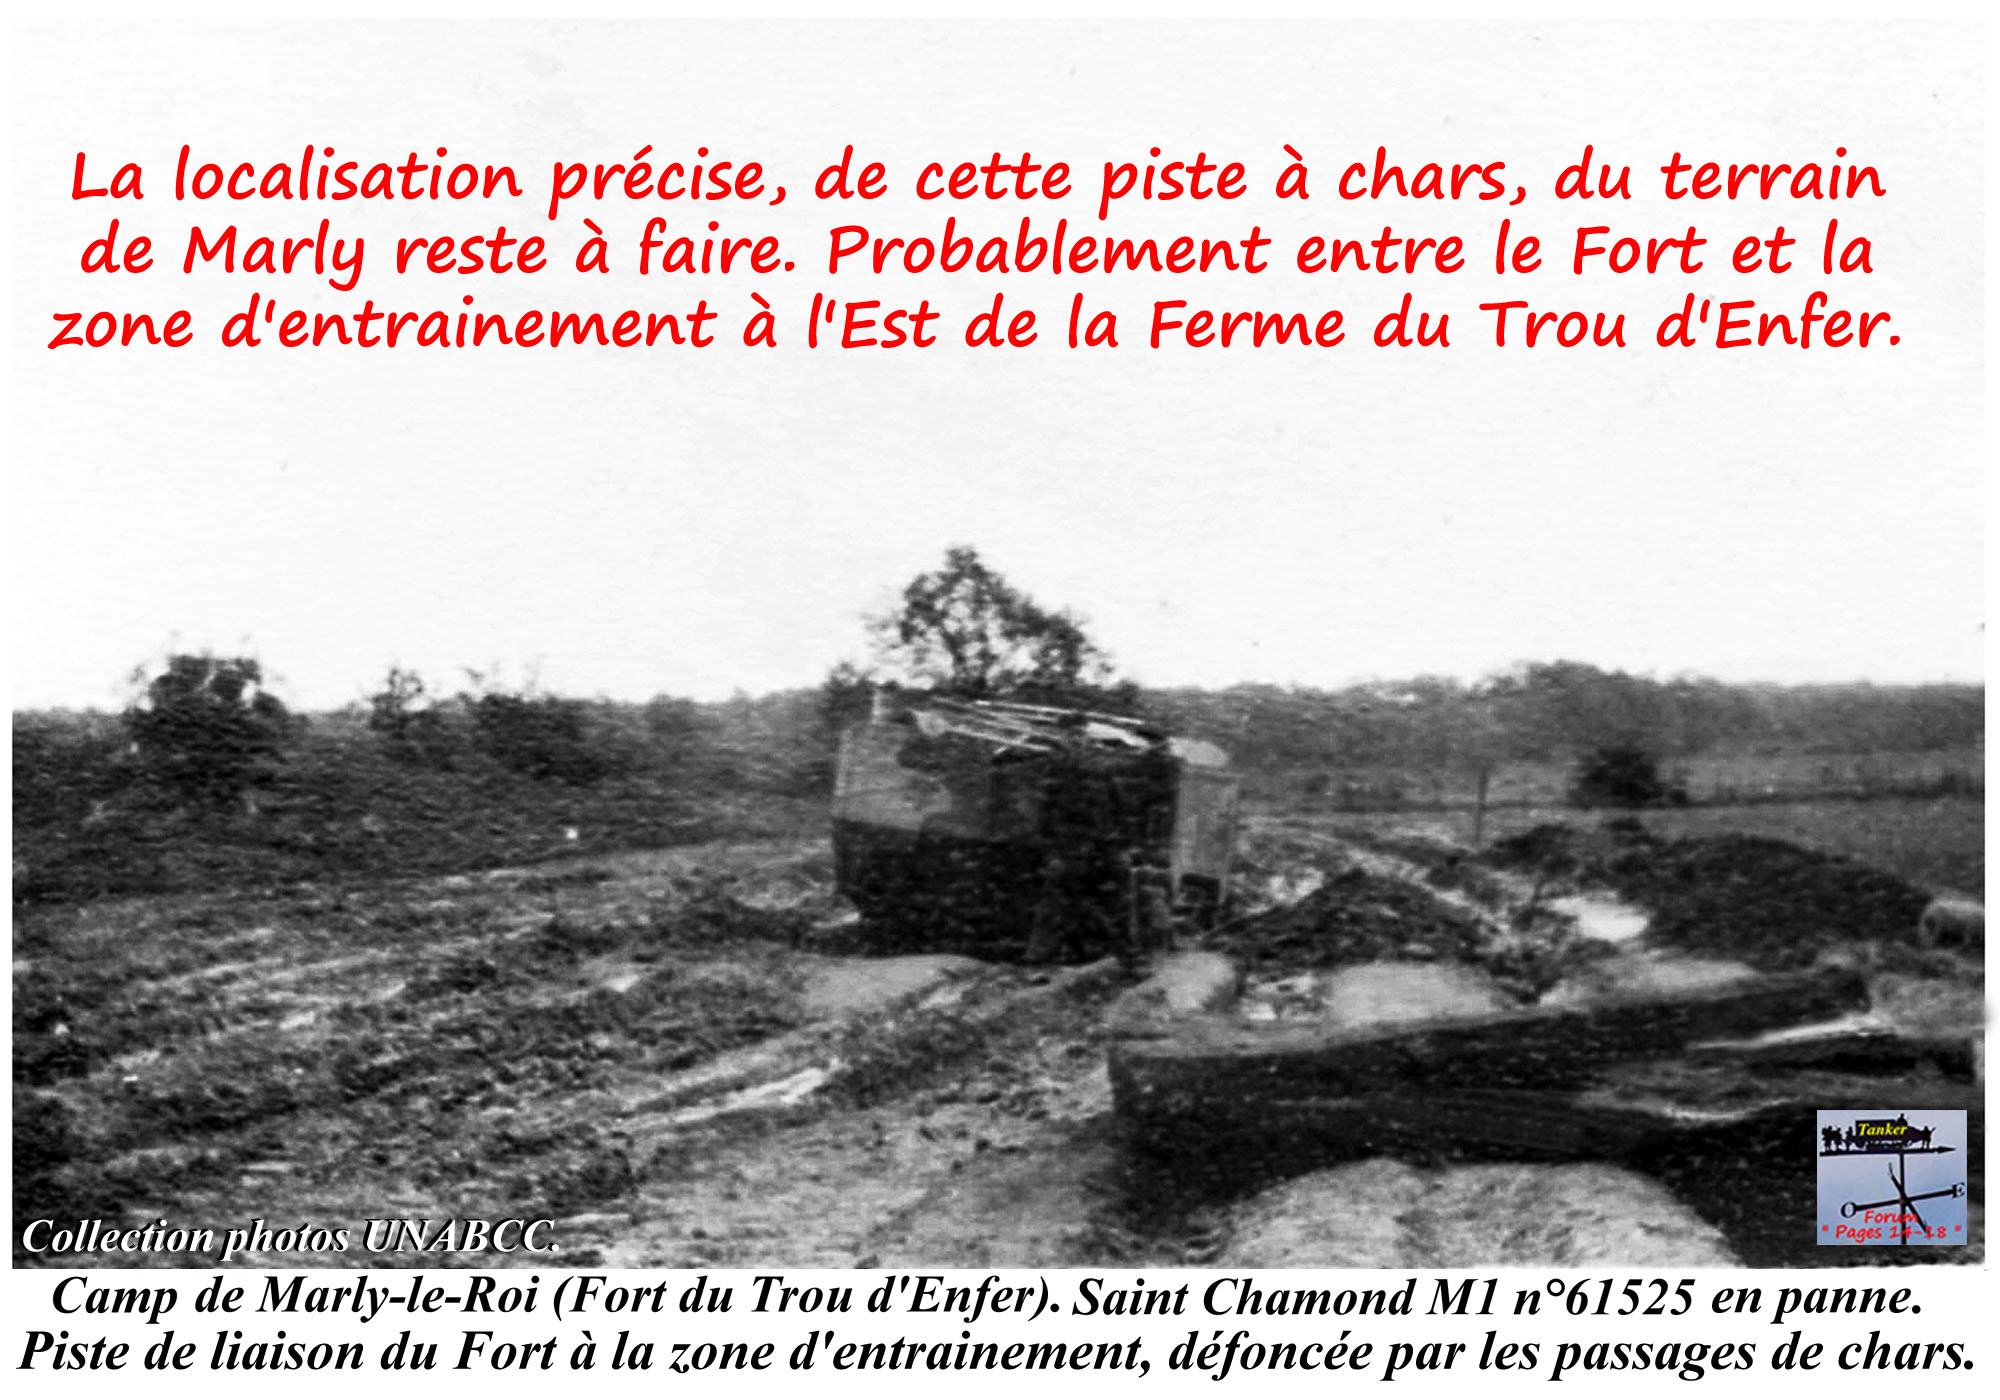 36 - Piste d'accès au terrain - St Chamond M1 n° 61525 (01a).jpg